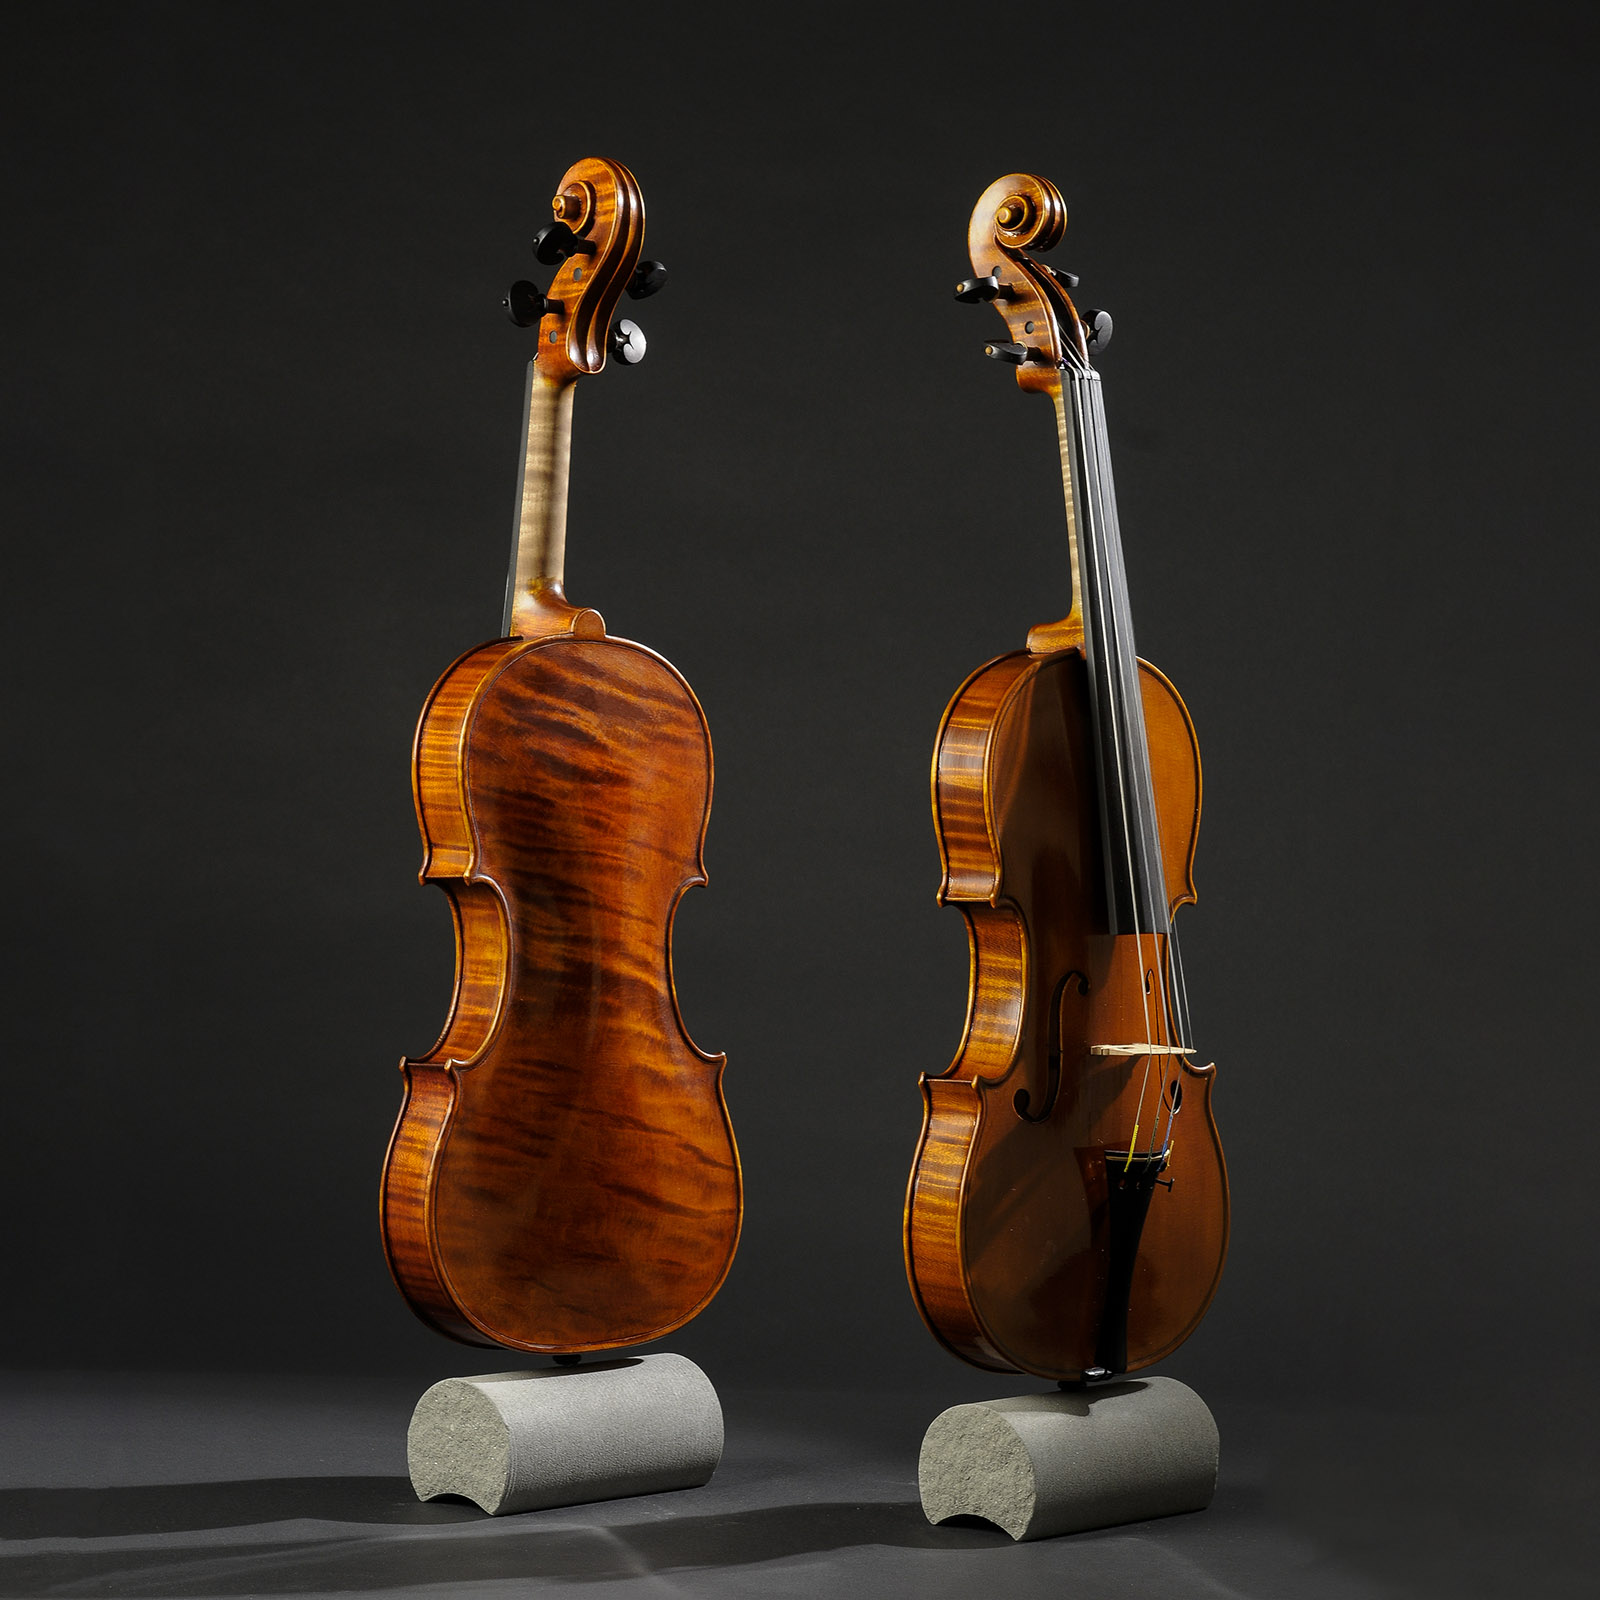 Stradivari & Del Gesù Stradivari & Mod. Del Gesù “The Twins“ - Image 8